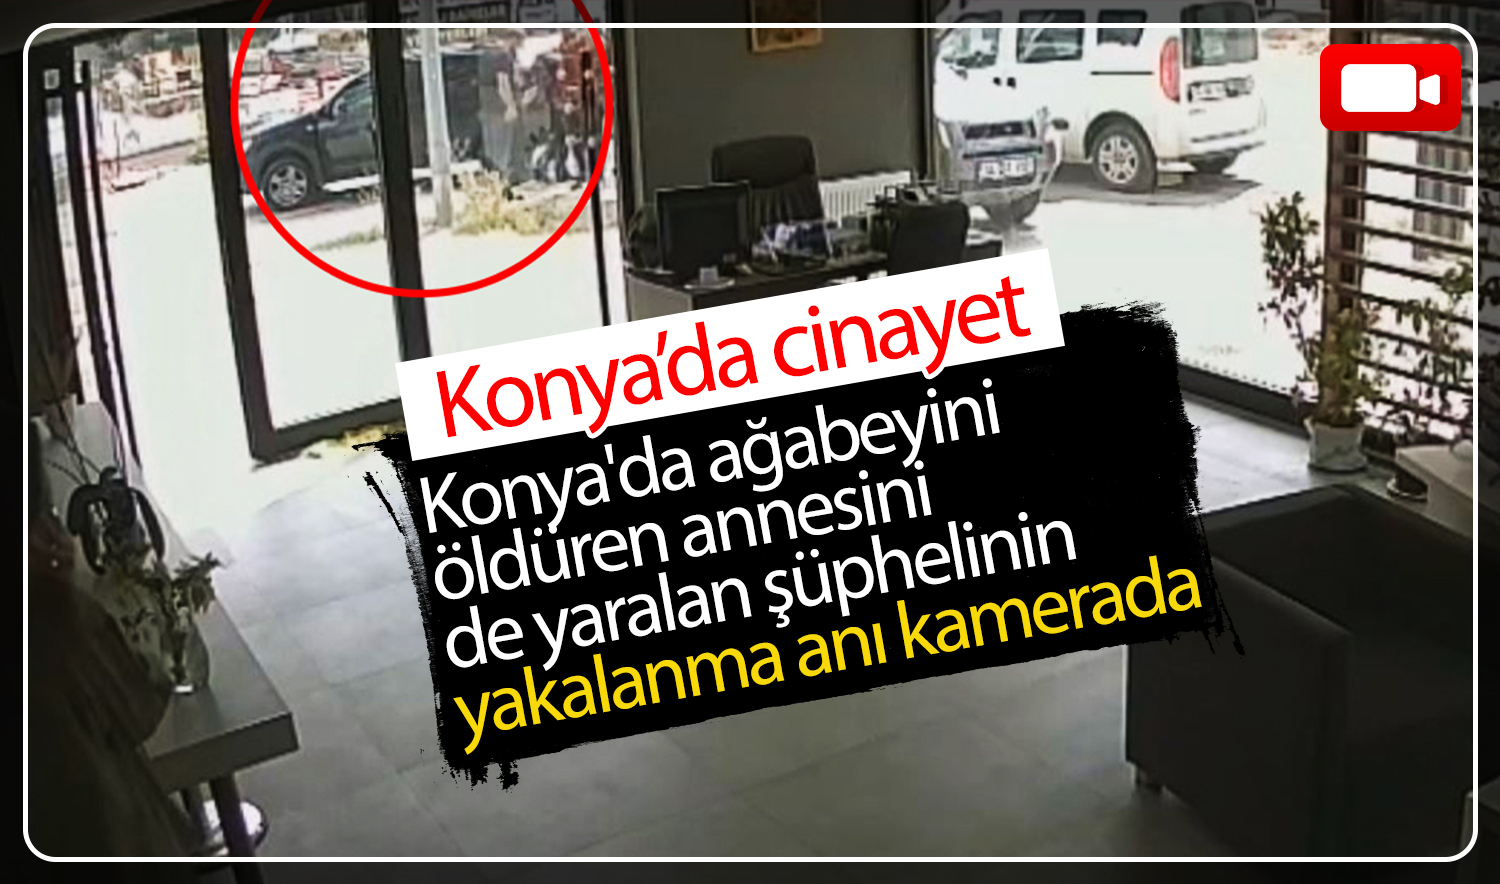 Konya’da ağabeyini öldüren annesini de yaralan şüphelinin yakalanma anı kamerada 